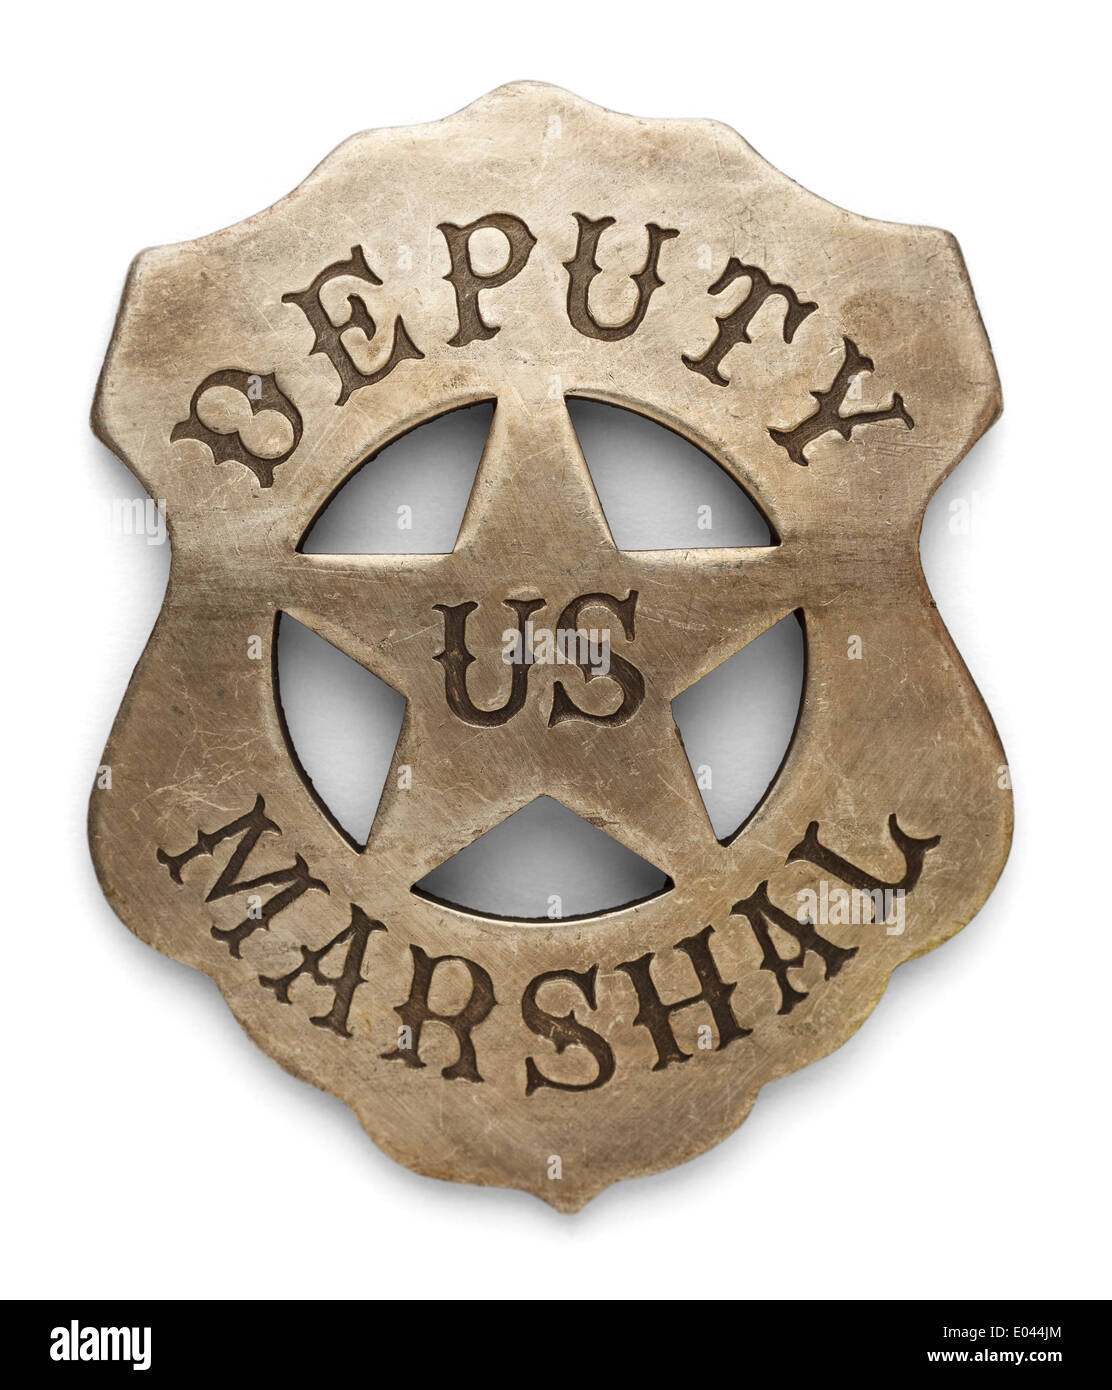 US Sheriff Deputy Marshals Badge Isolated on White Background. Stock Photo